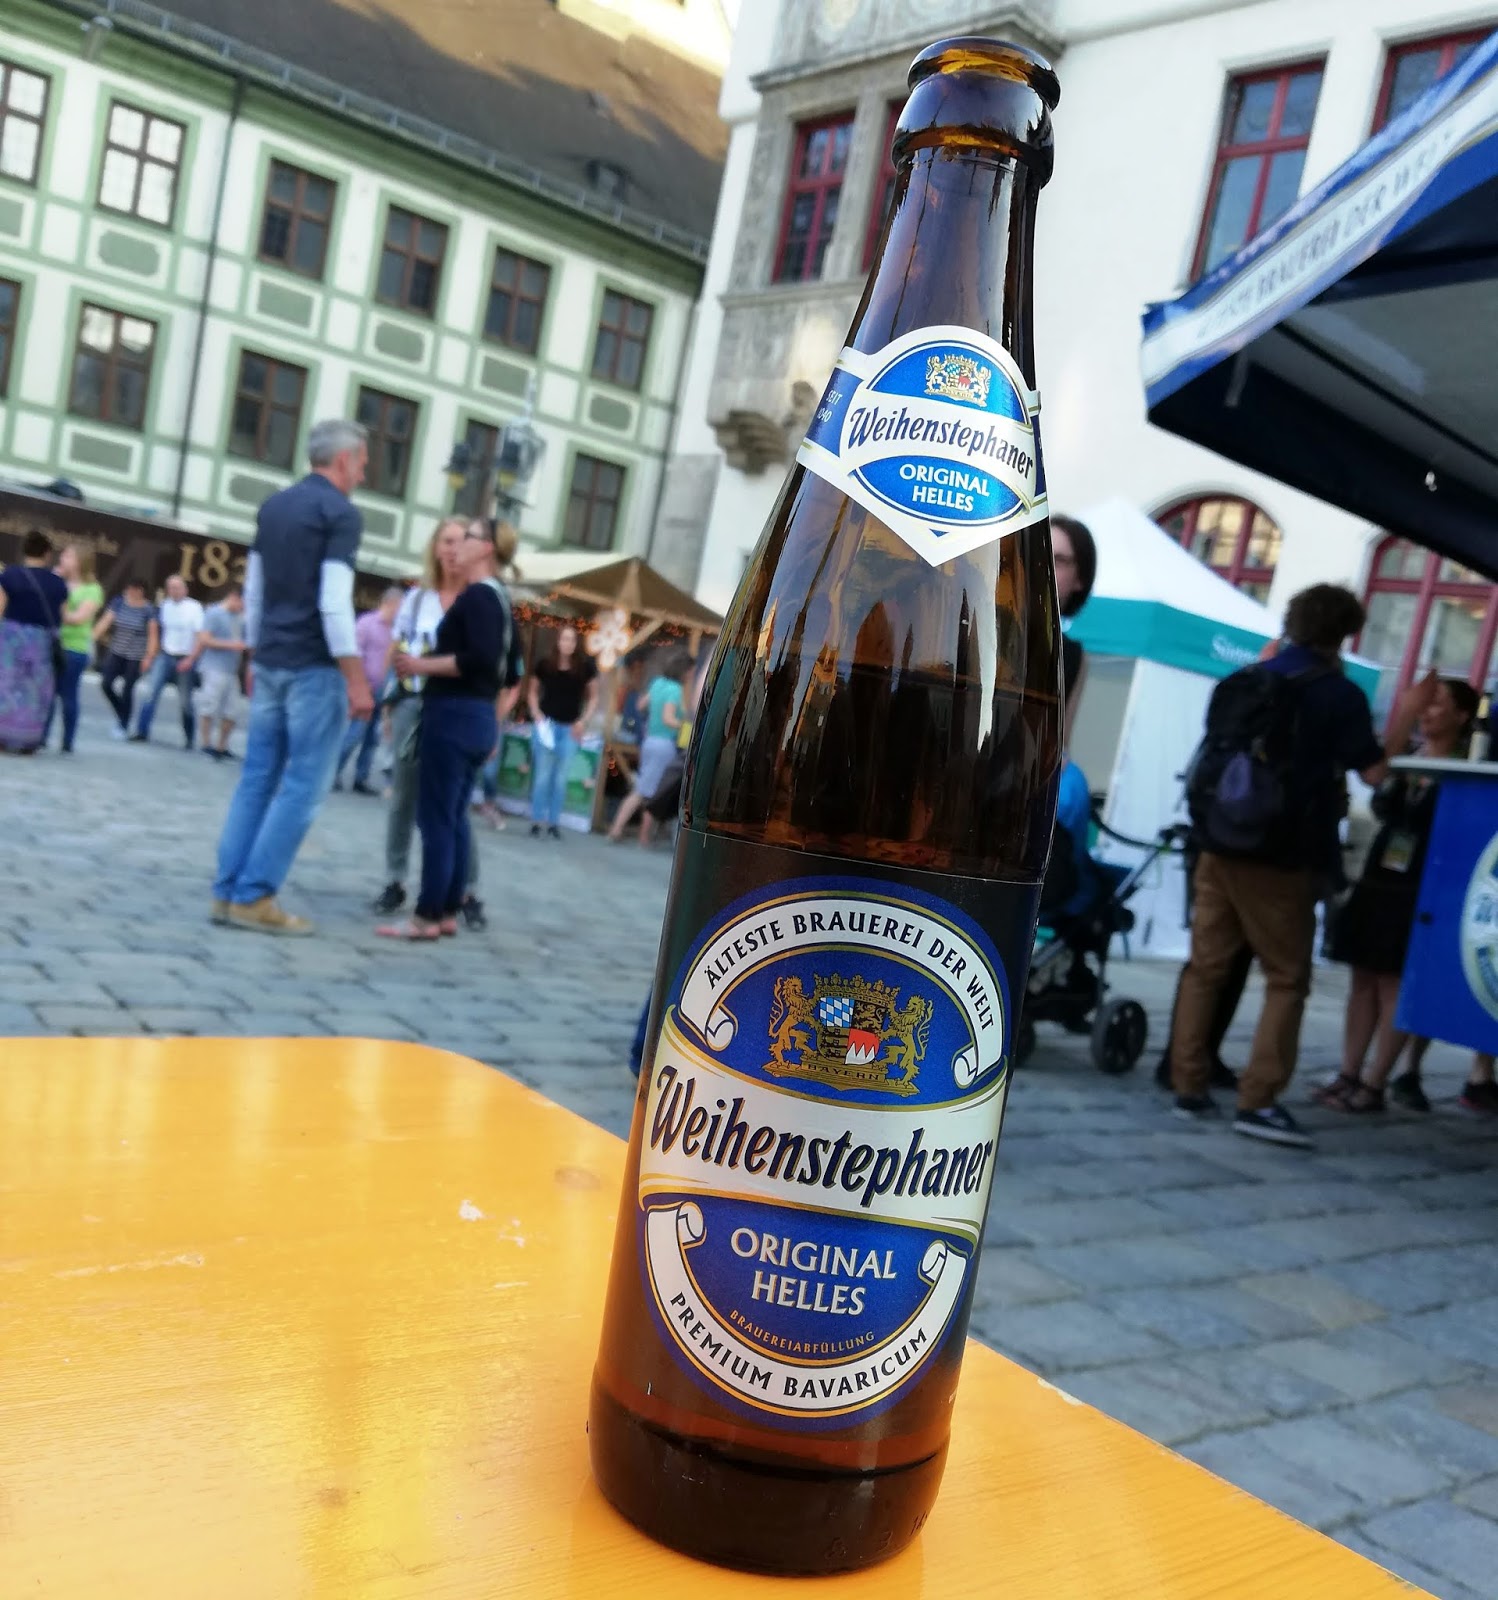 Пиво с синей этикеткой. Пиво немецкое в бутылках. Немецкое пиво синяя этикетка. Немецкое пиво с синей этикеткой. Пиво с синей этикеткой на бутылке.